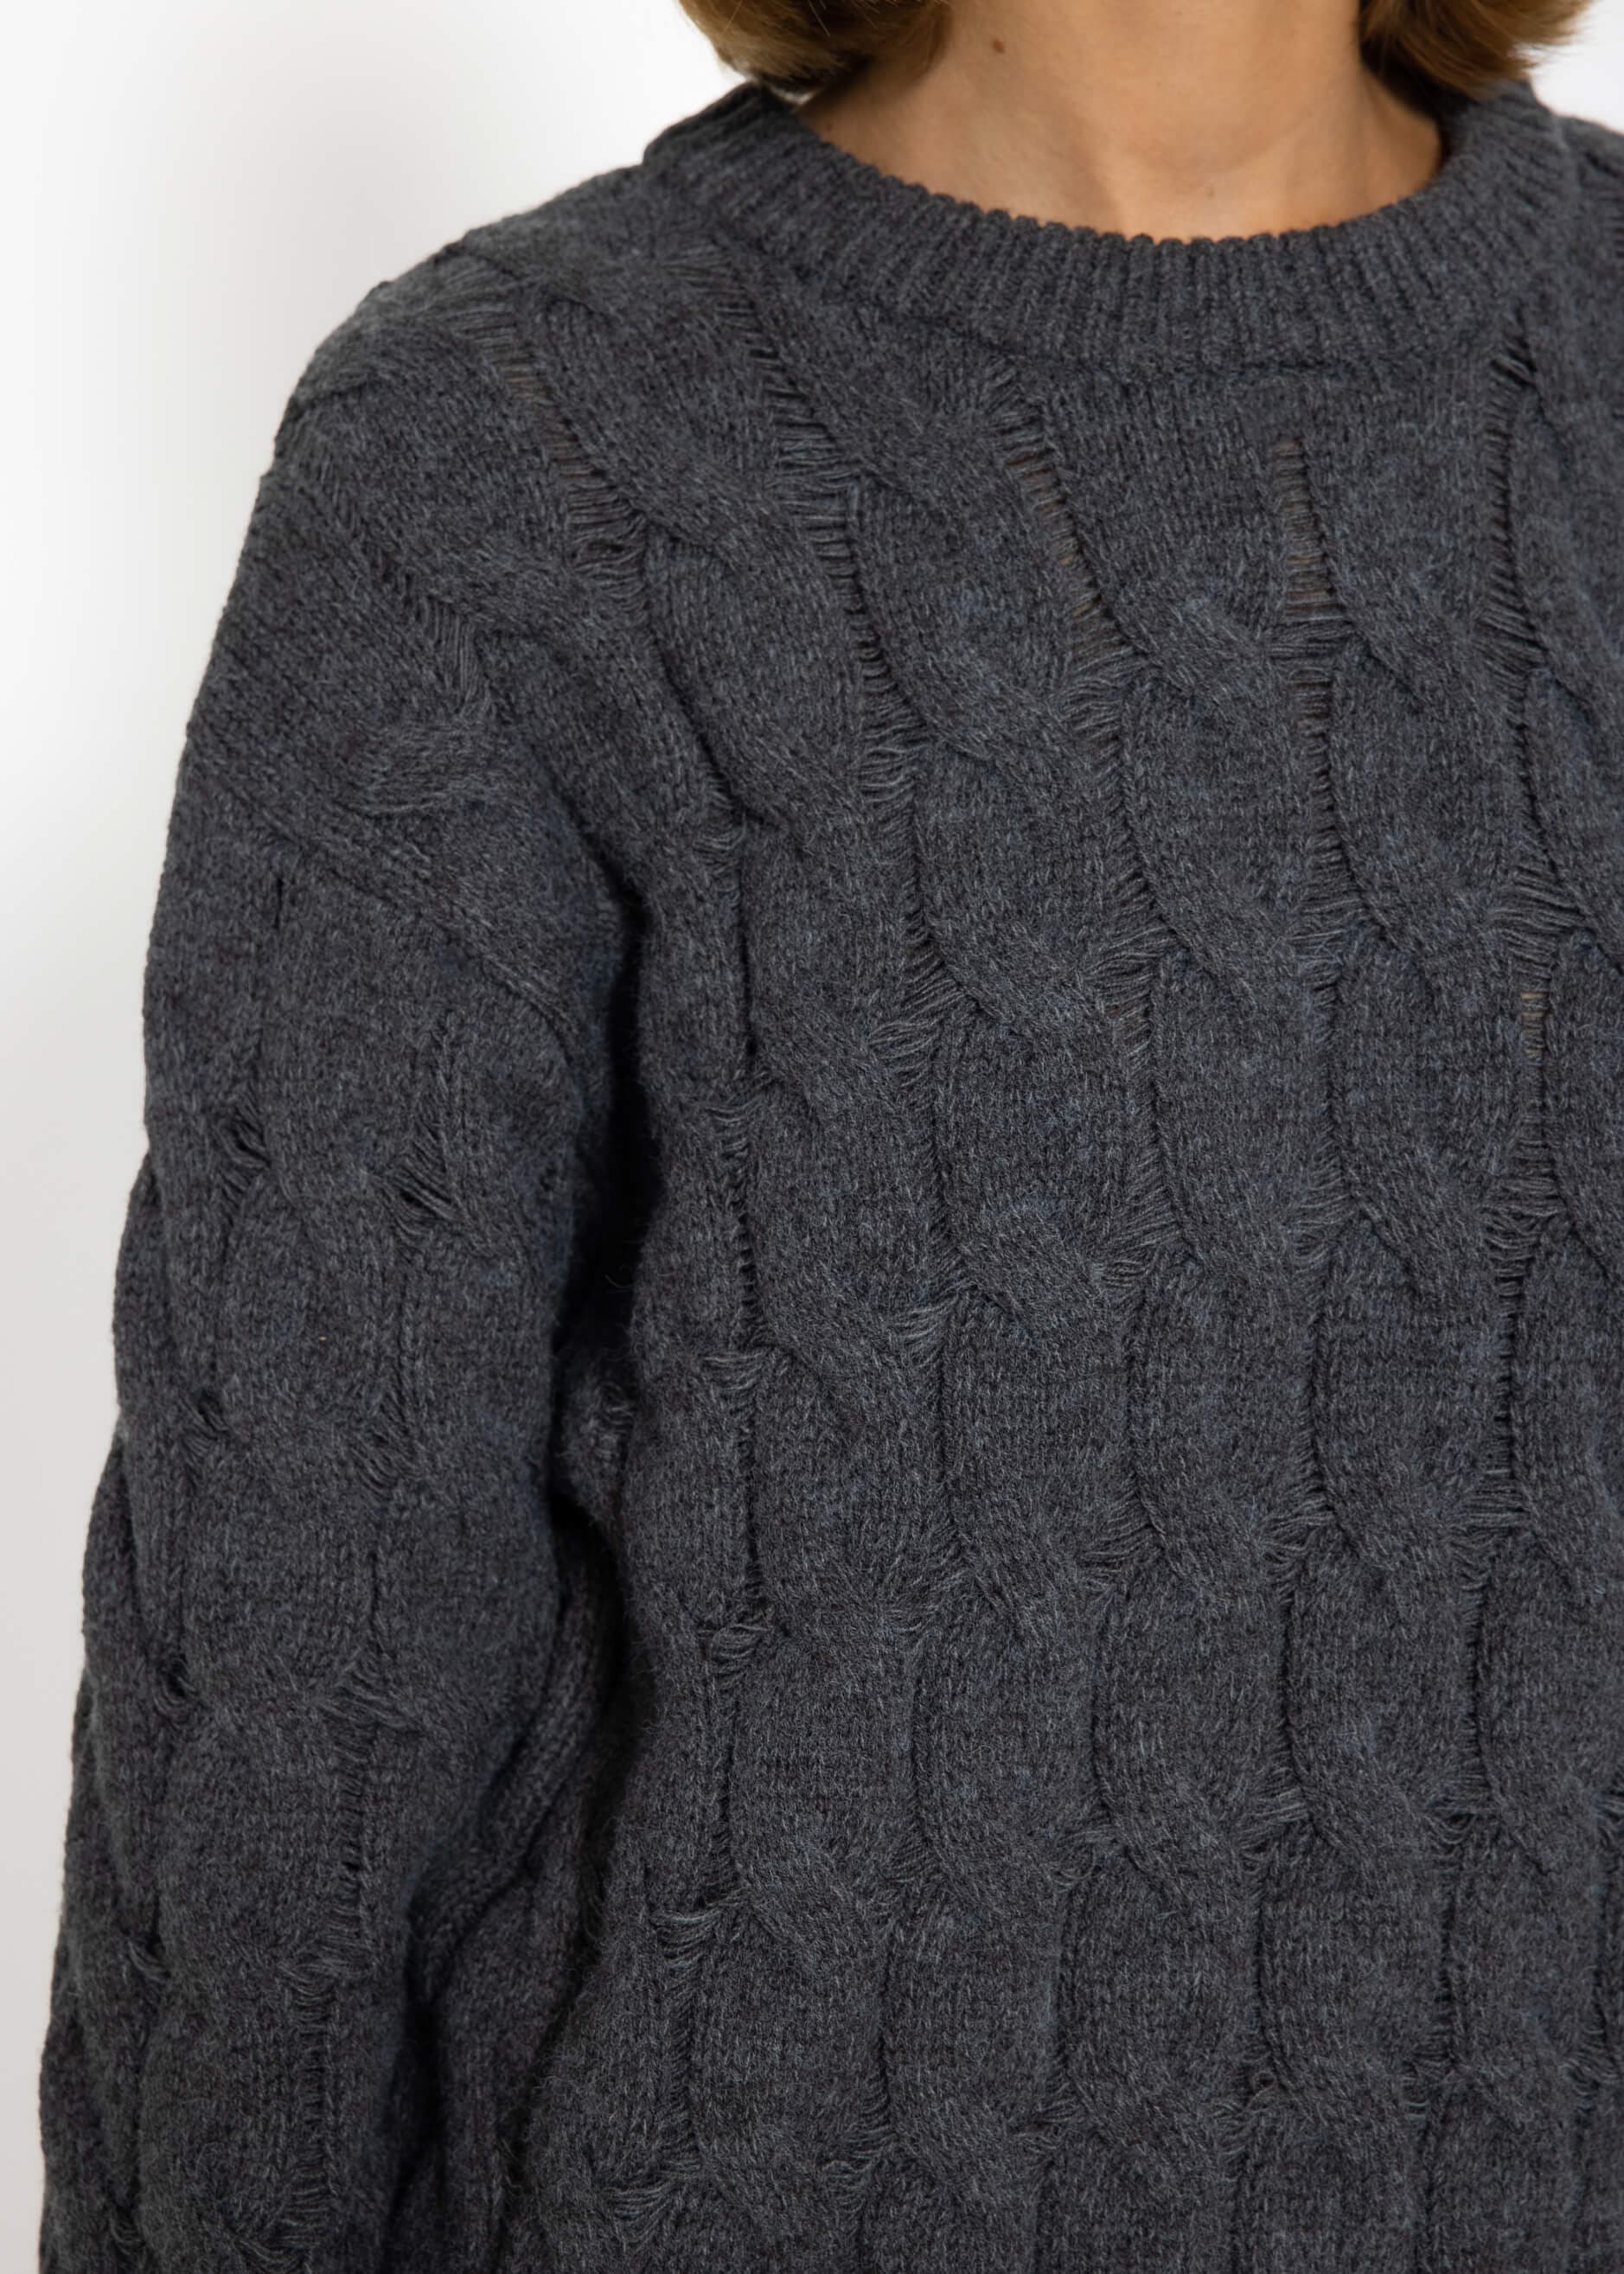 Ein riesiges Schnäppchen! Strickpullover mit | dunkelgrau | Pullover Bekleidung - SASSYCLASSY Zopfmuster 